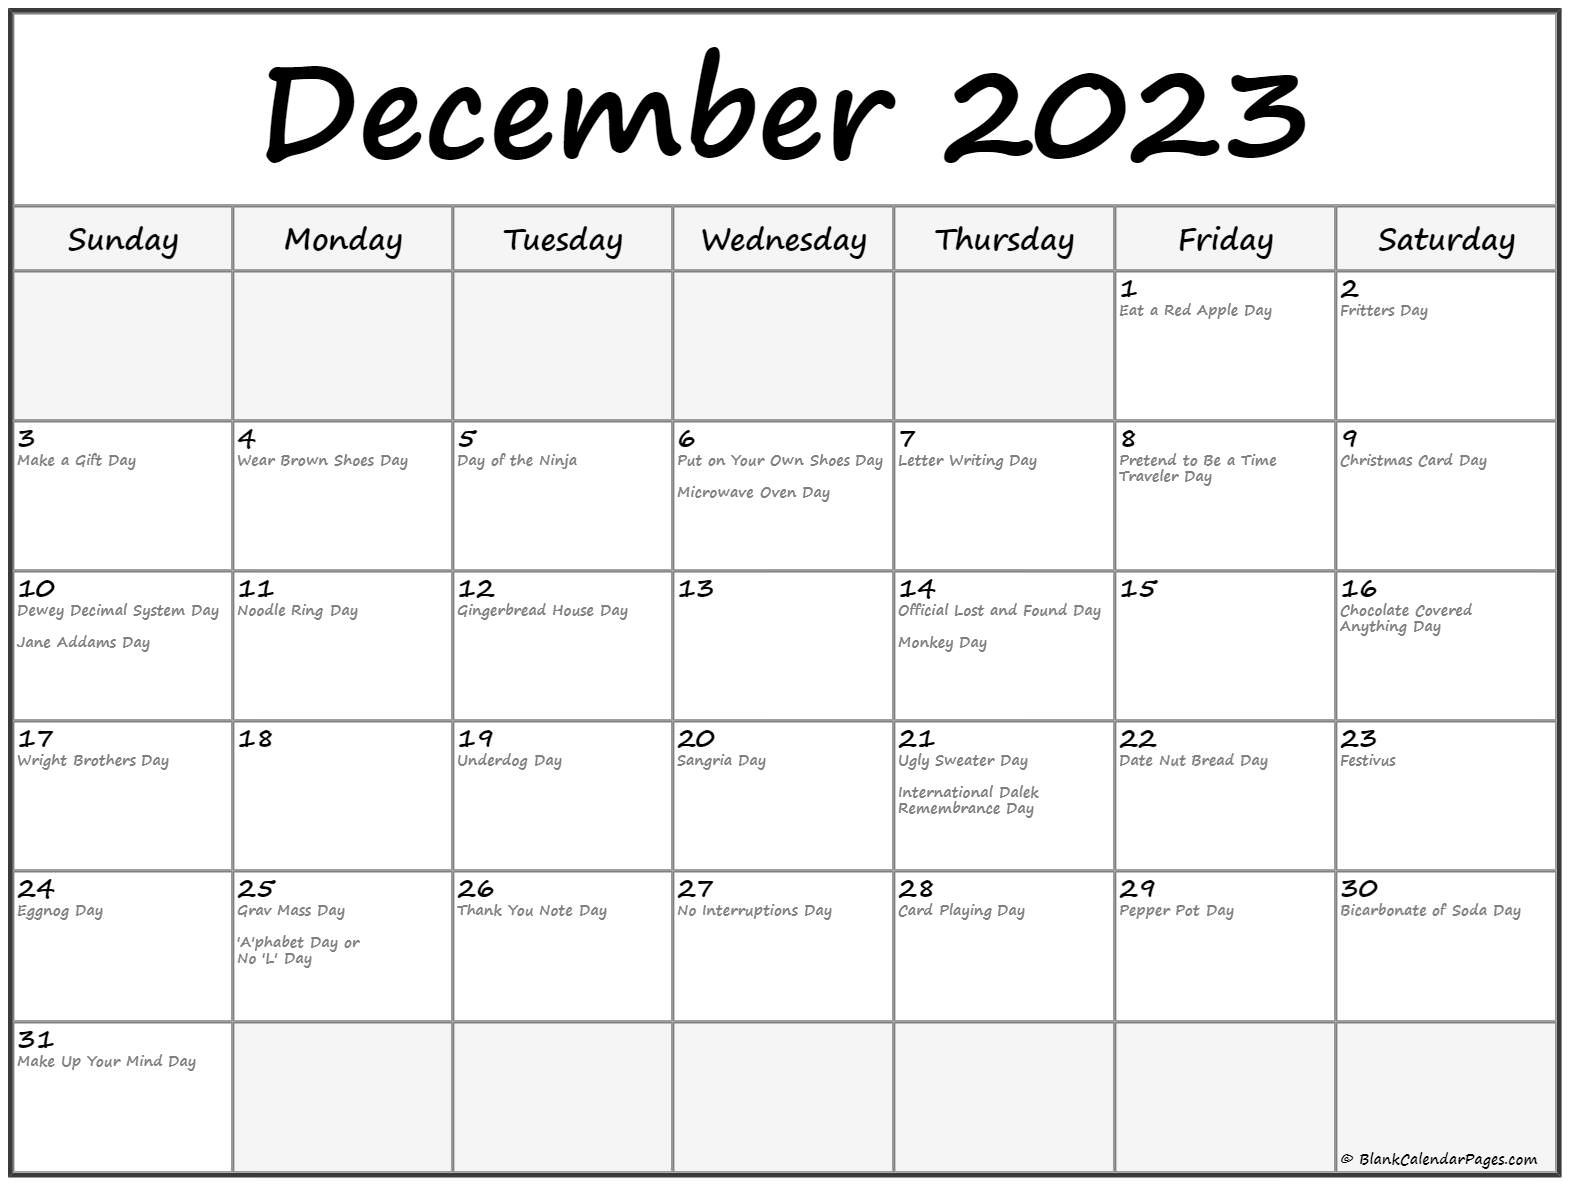 test-de-manejo-2023-holidays-calendar-imagesee